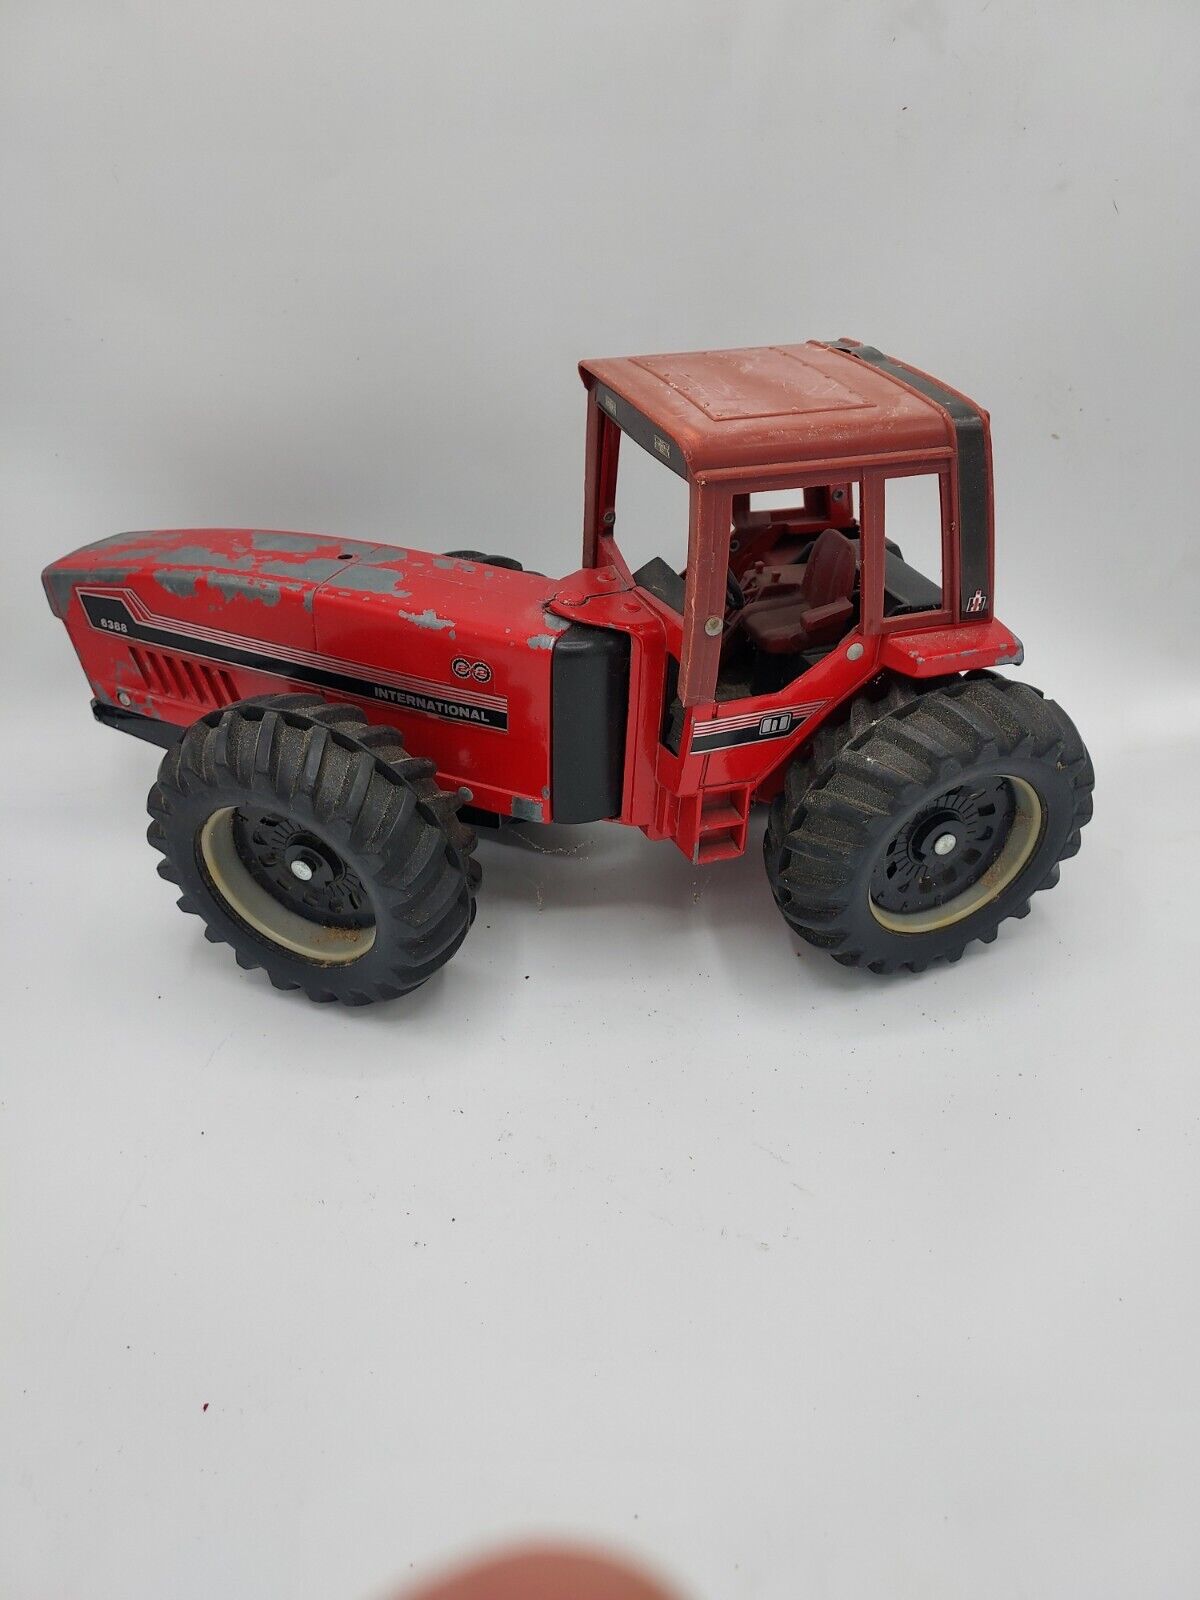 Vintage Ertl Toys International 6388 2+2 1/16 Scale Die Cast Metal Toy Tractor